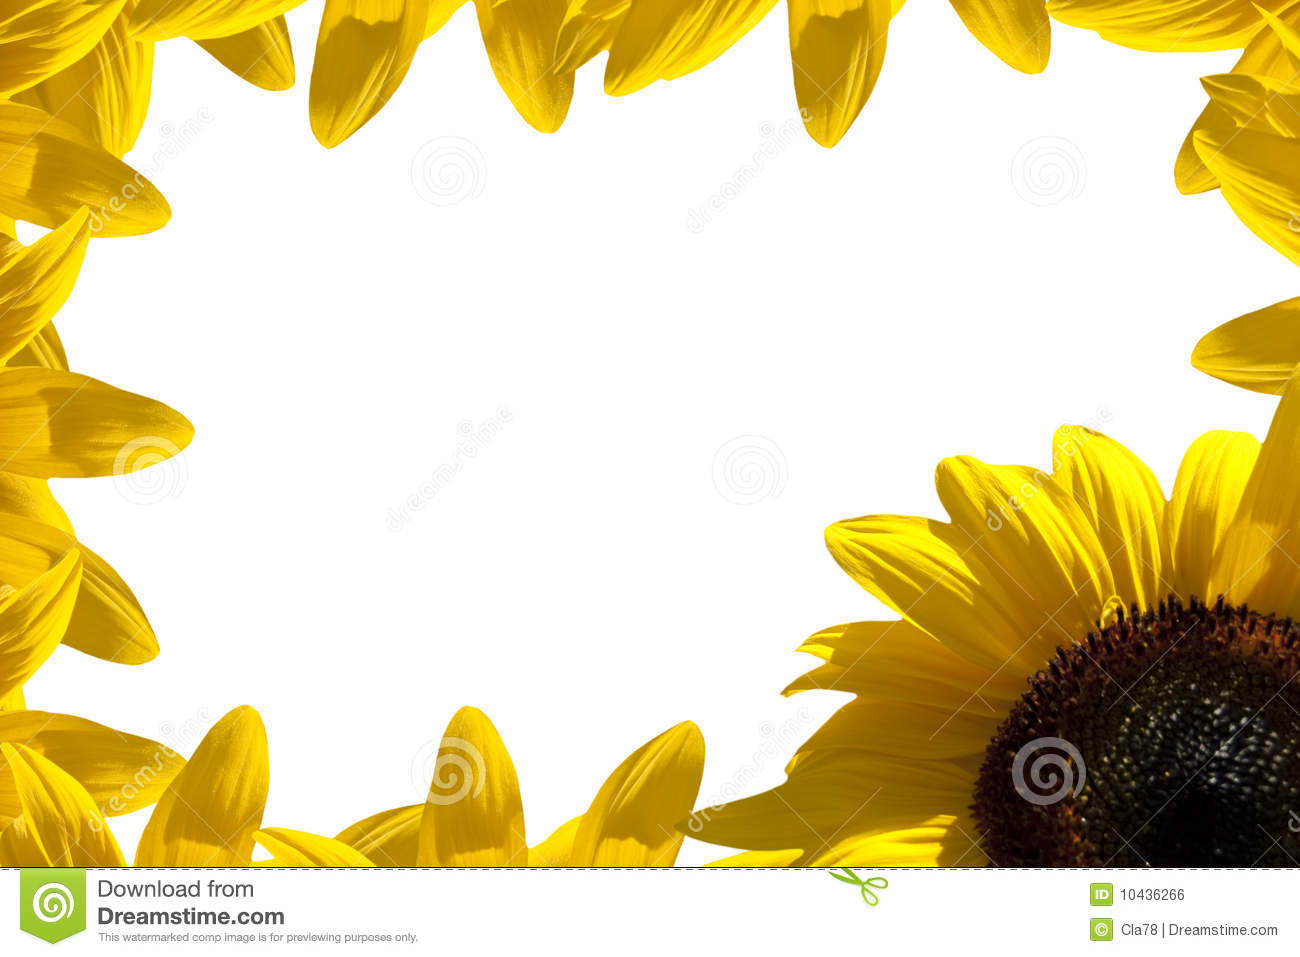 Sunflower Border Royalty Free Stock Image   Image  10436266